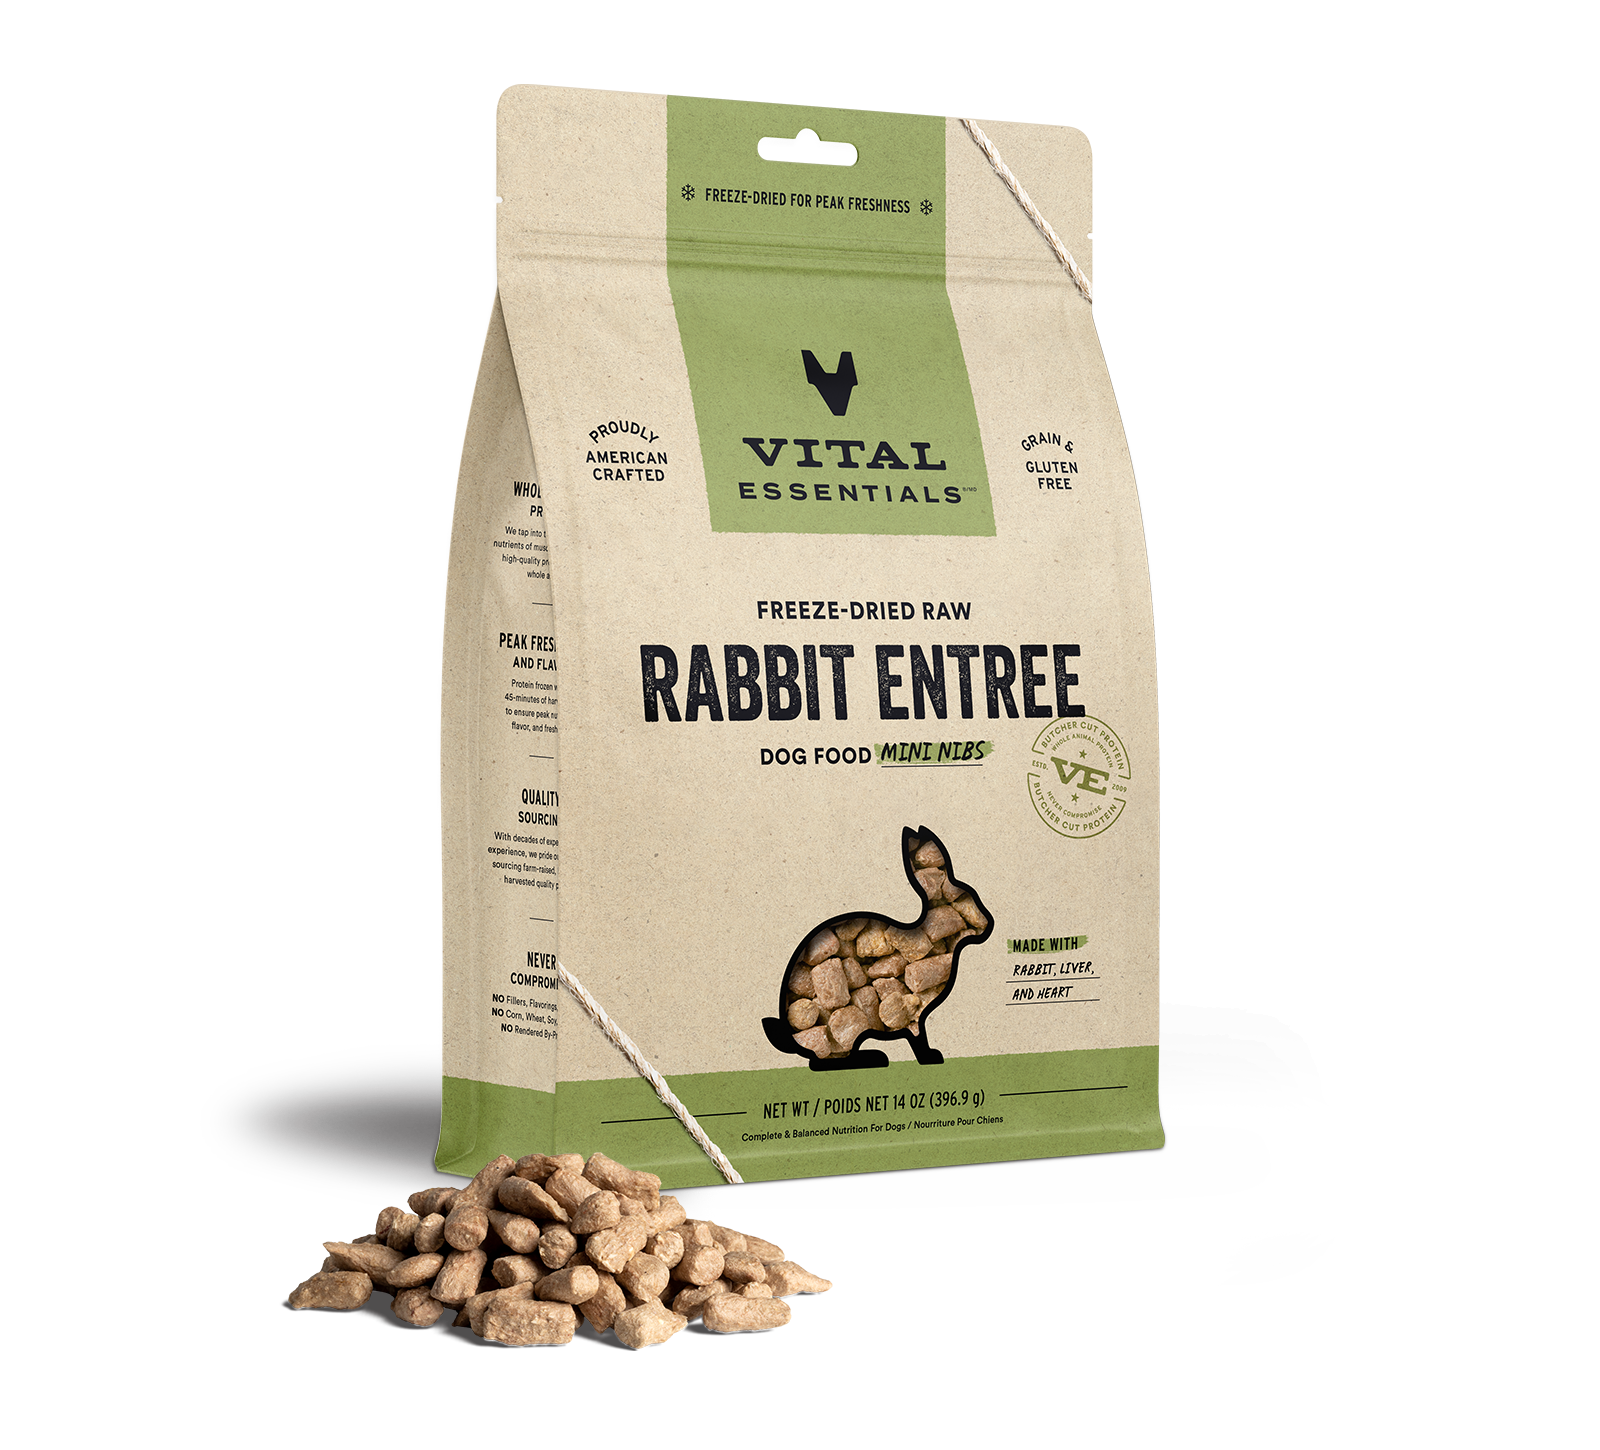 Vital Essentials Freeze-Dried Raw Rabbit Entree Dog Food Mini Nibs, 14 oz - Health/First Aid